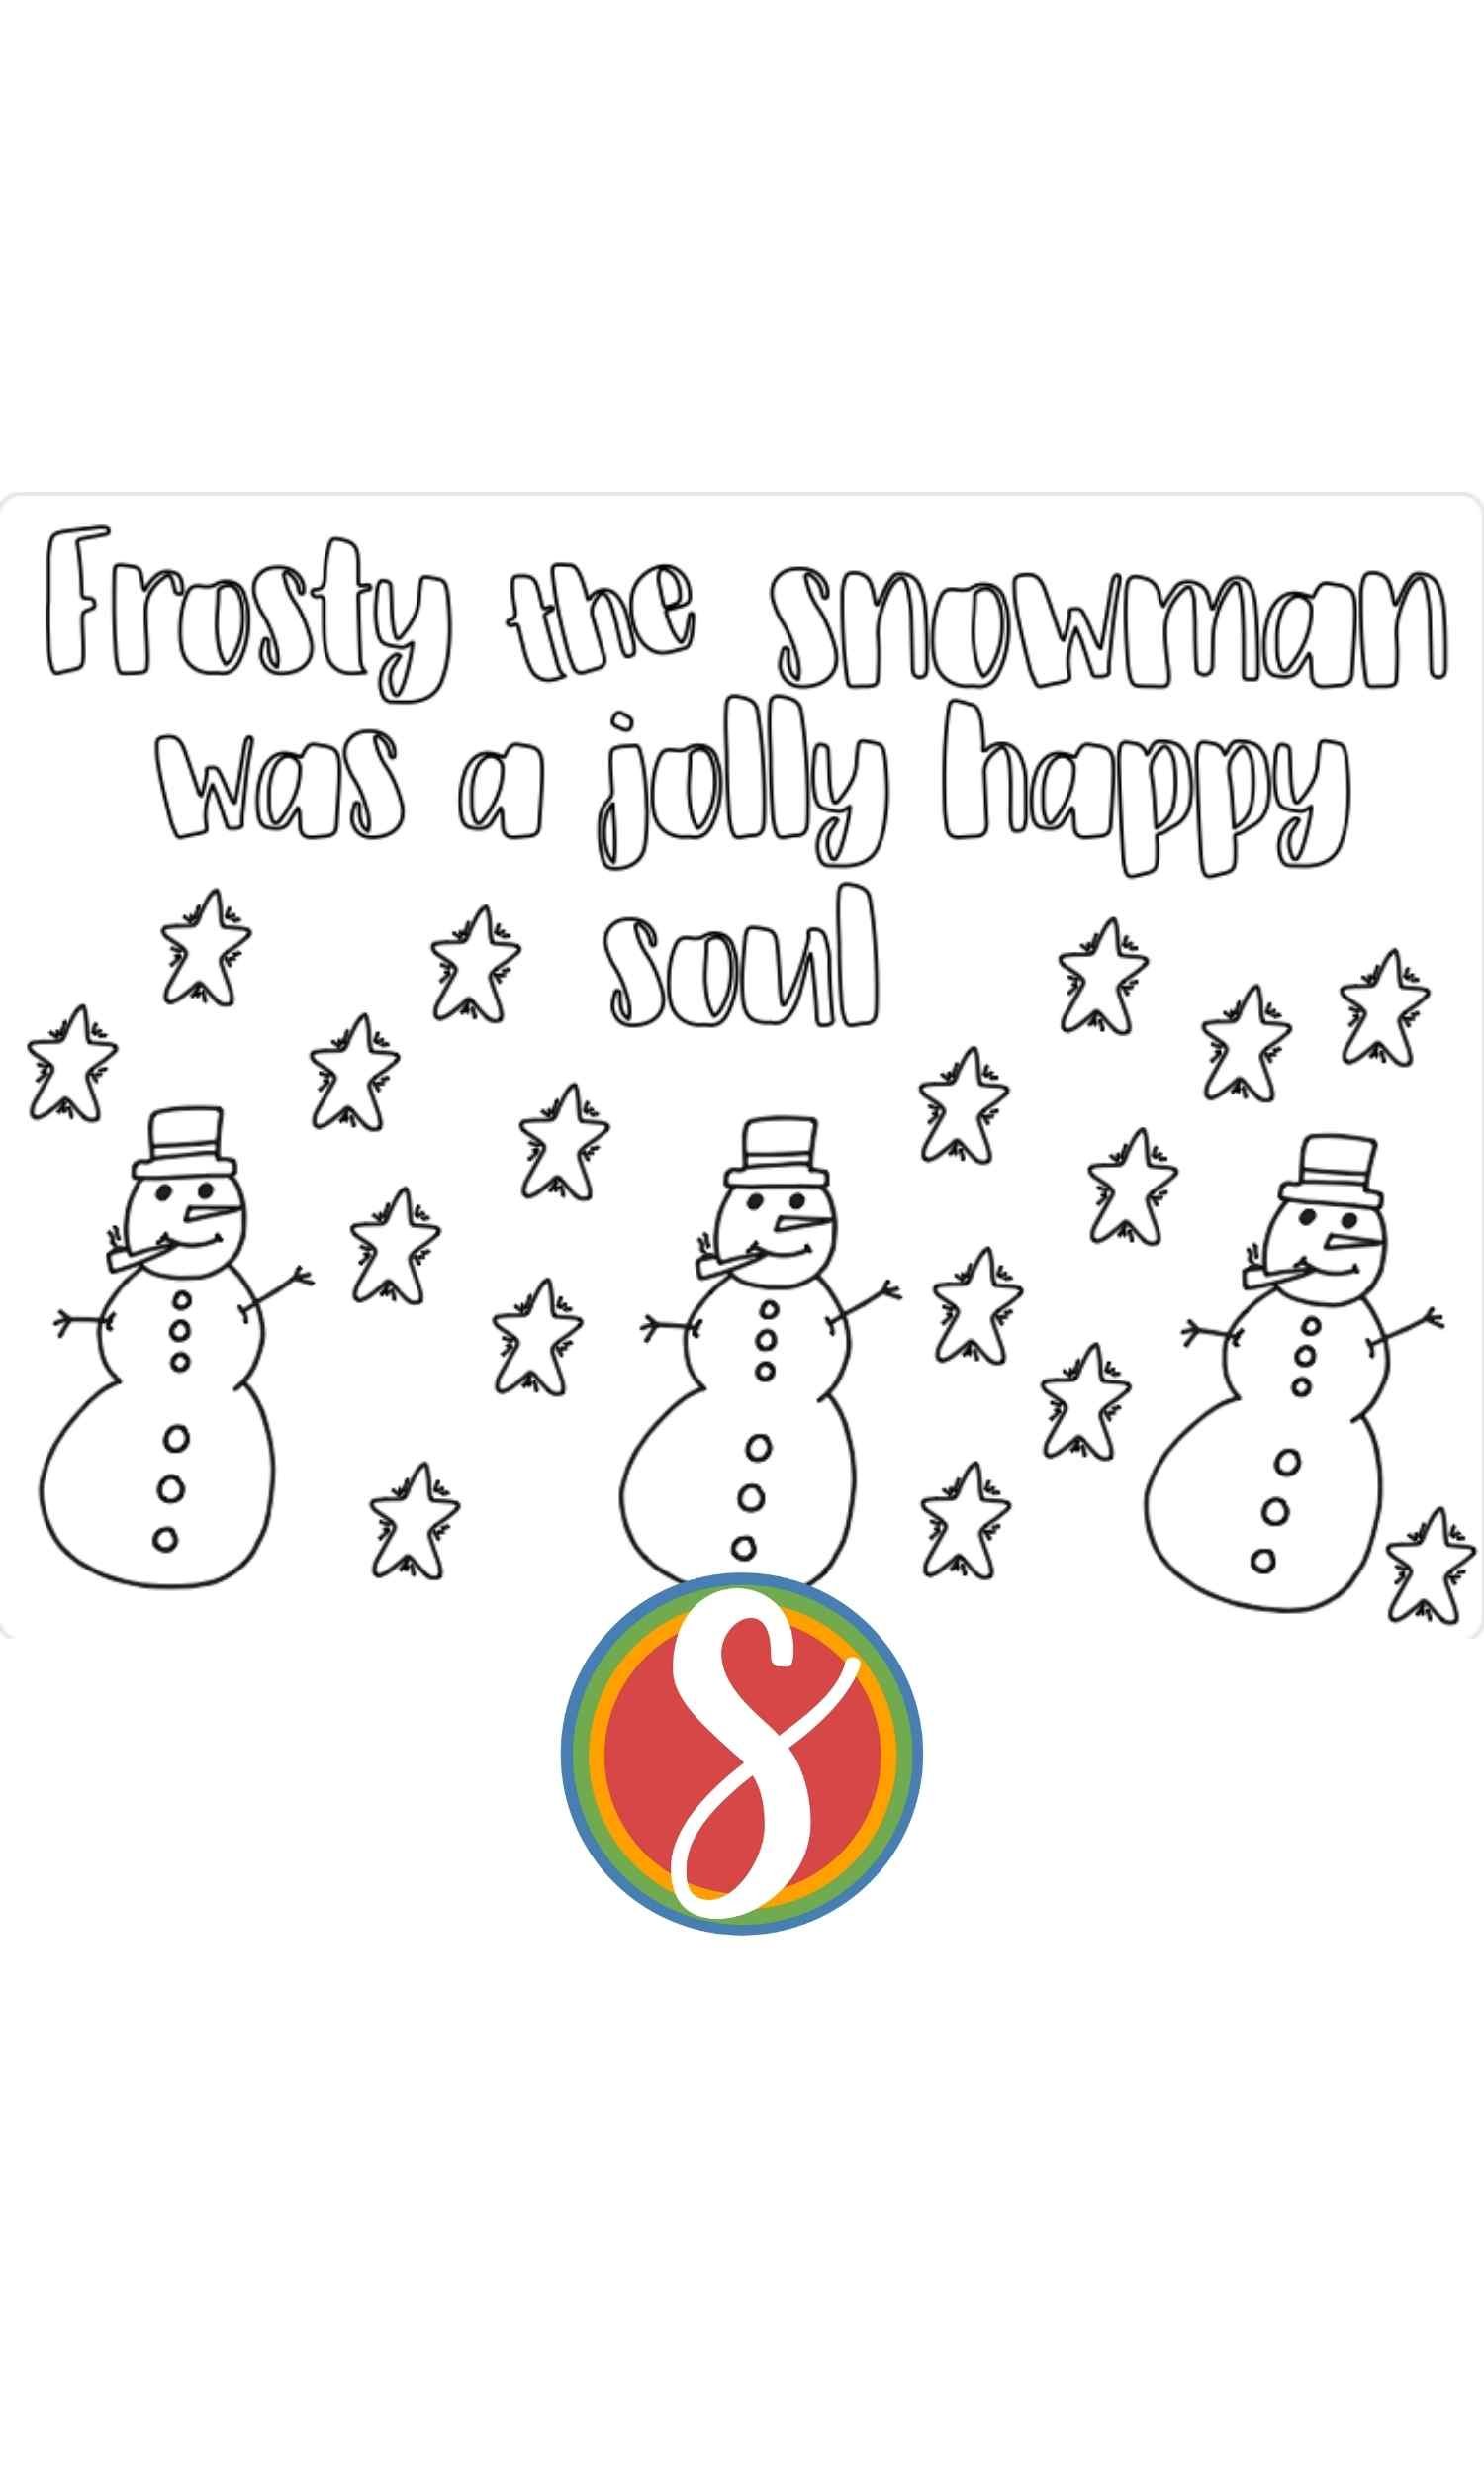 Free snowman coloring pages â stevie doodles